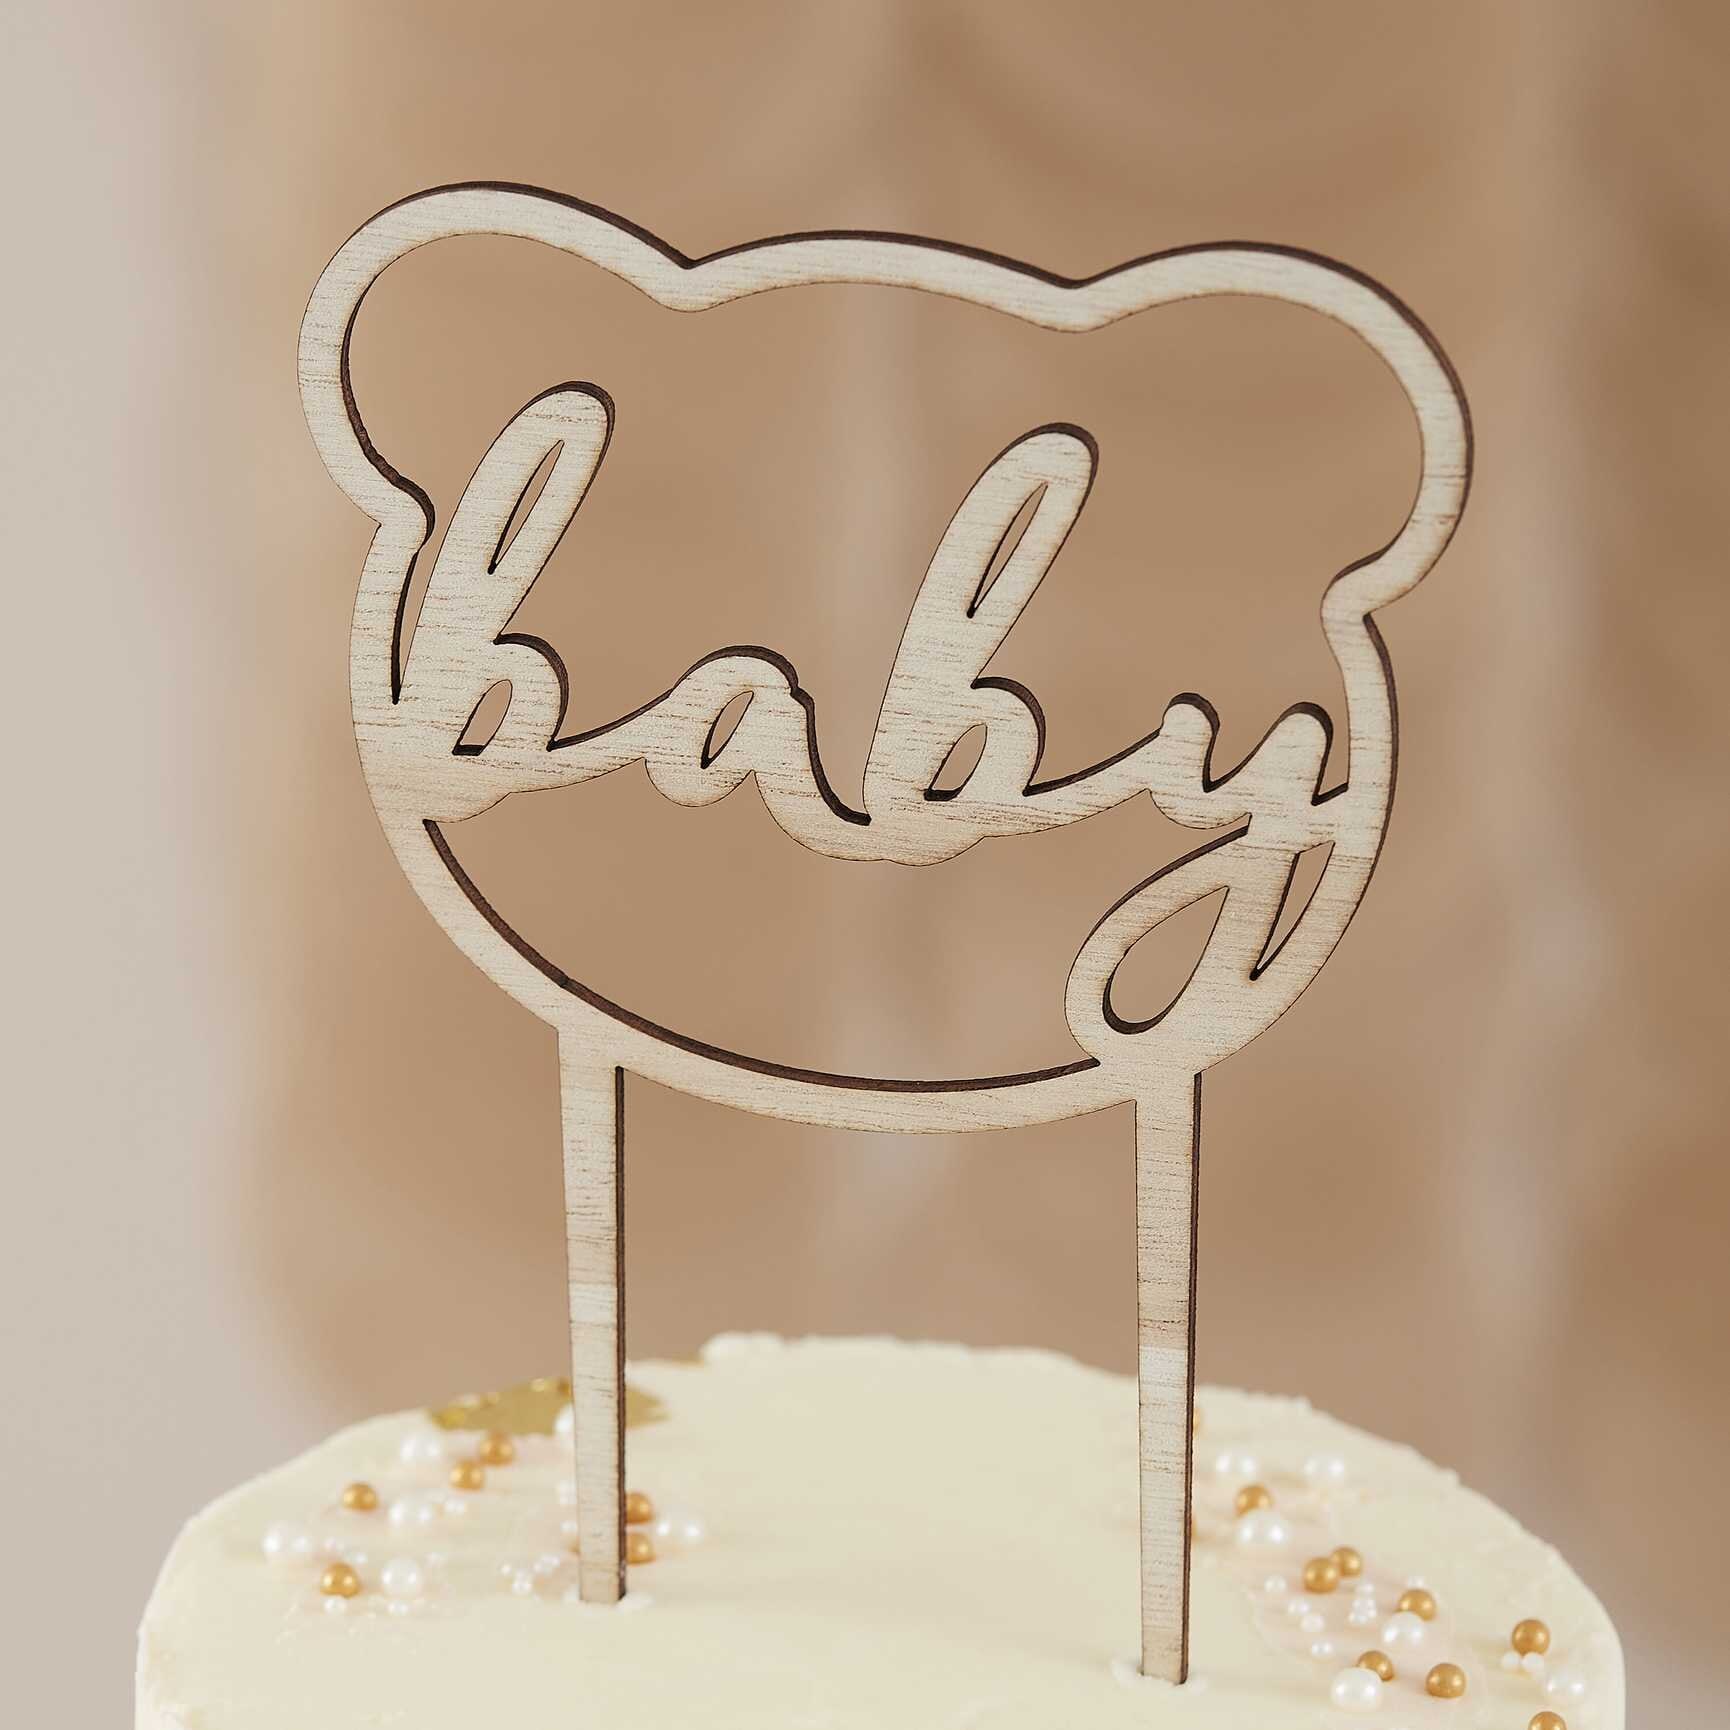 Cake Topper - Teddy Bear Babyshower